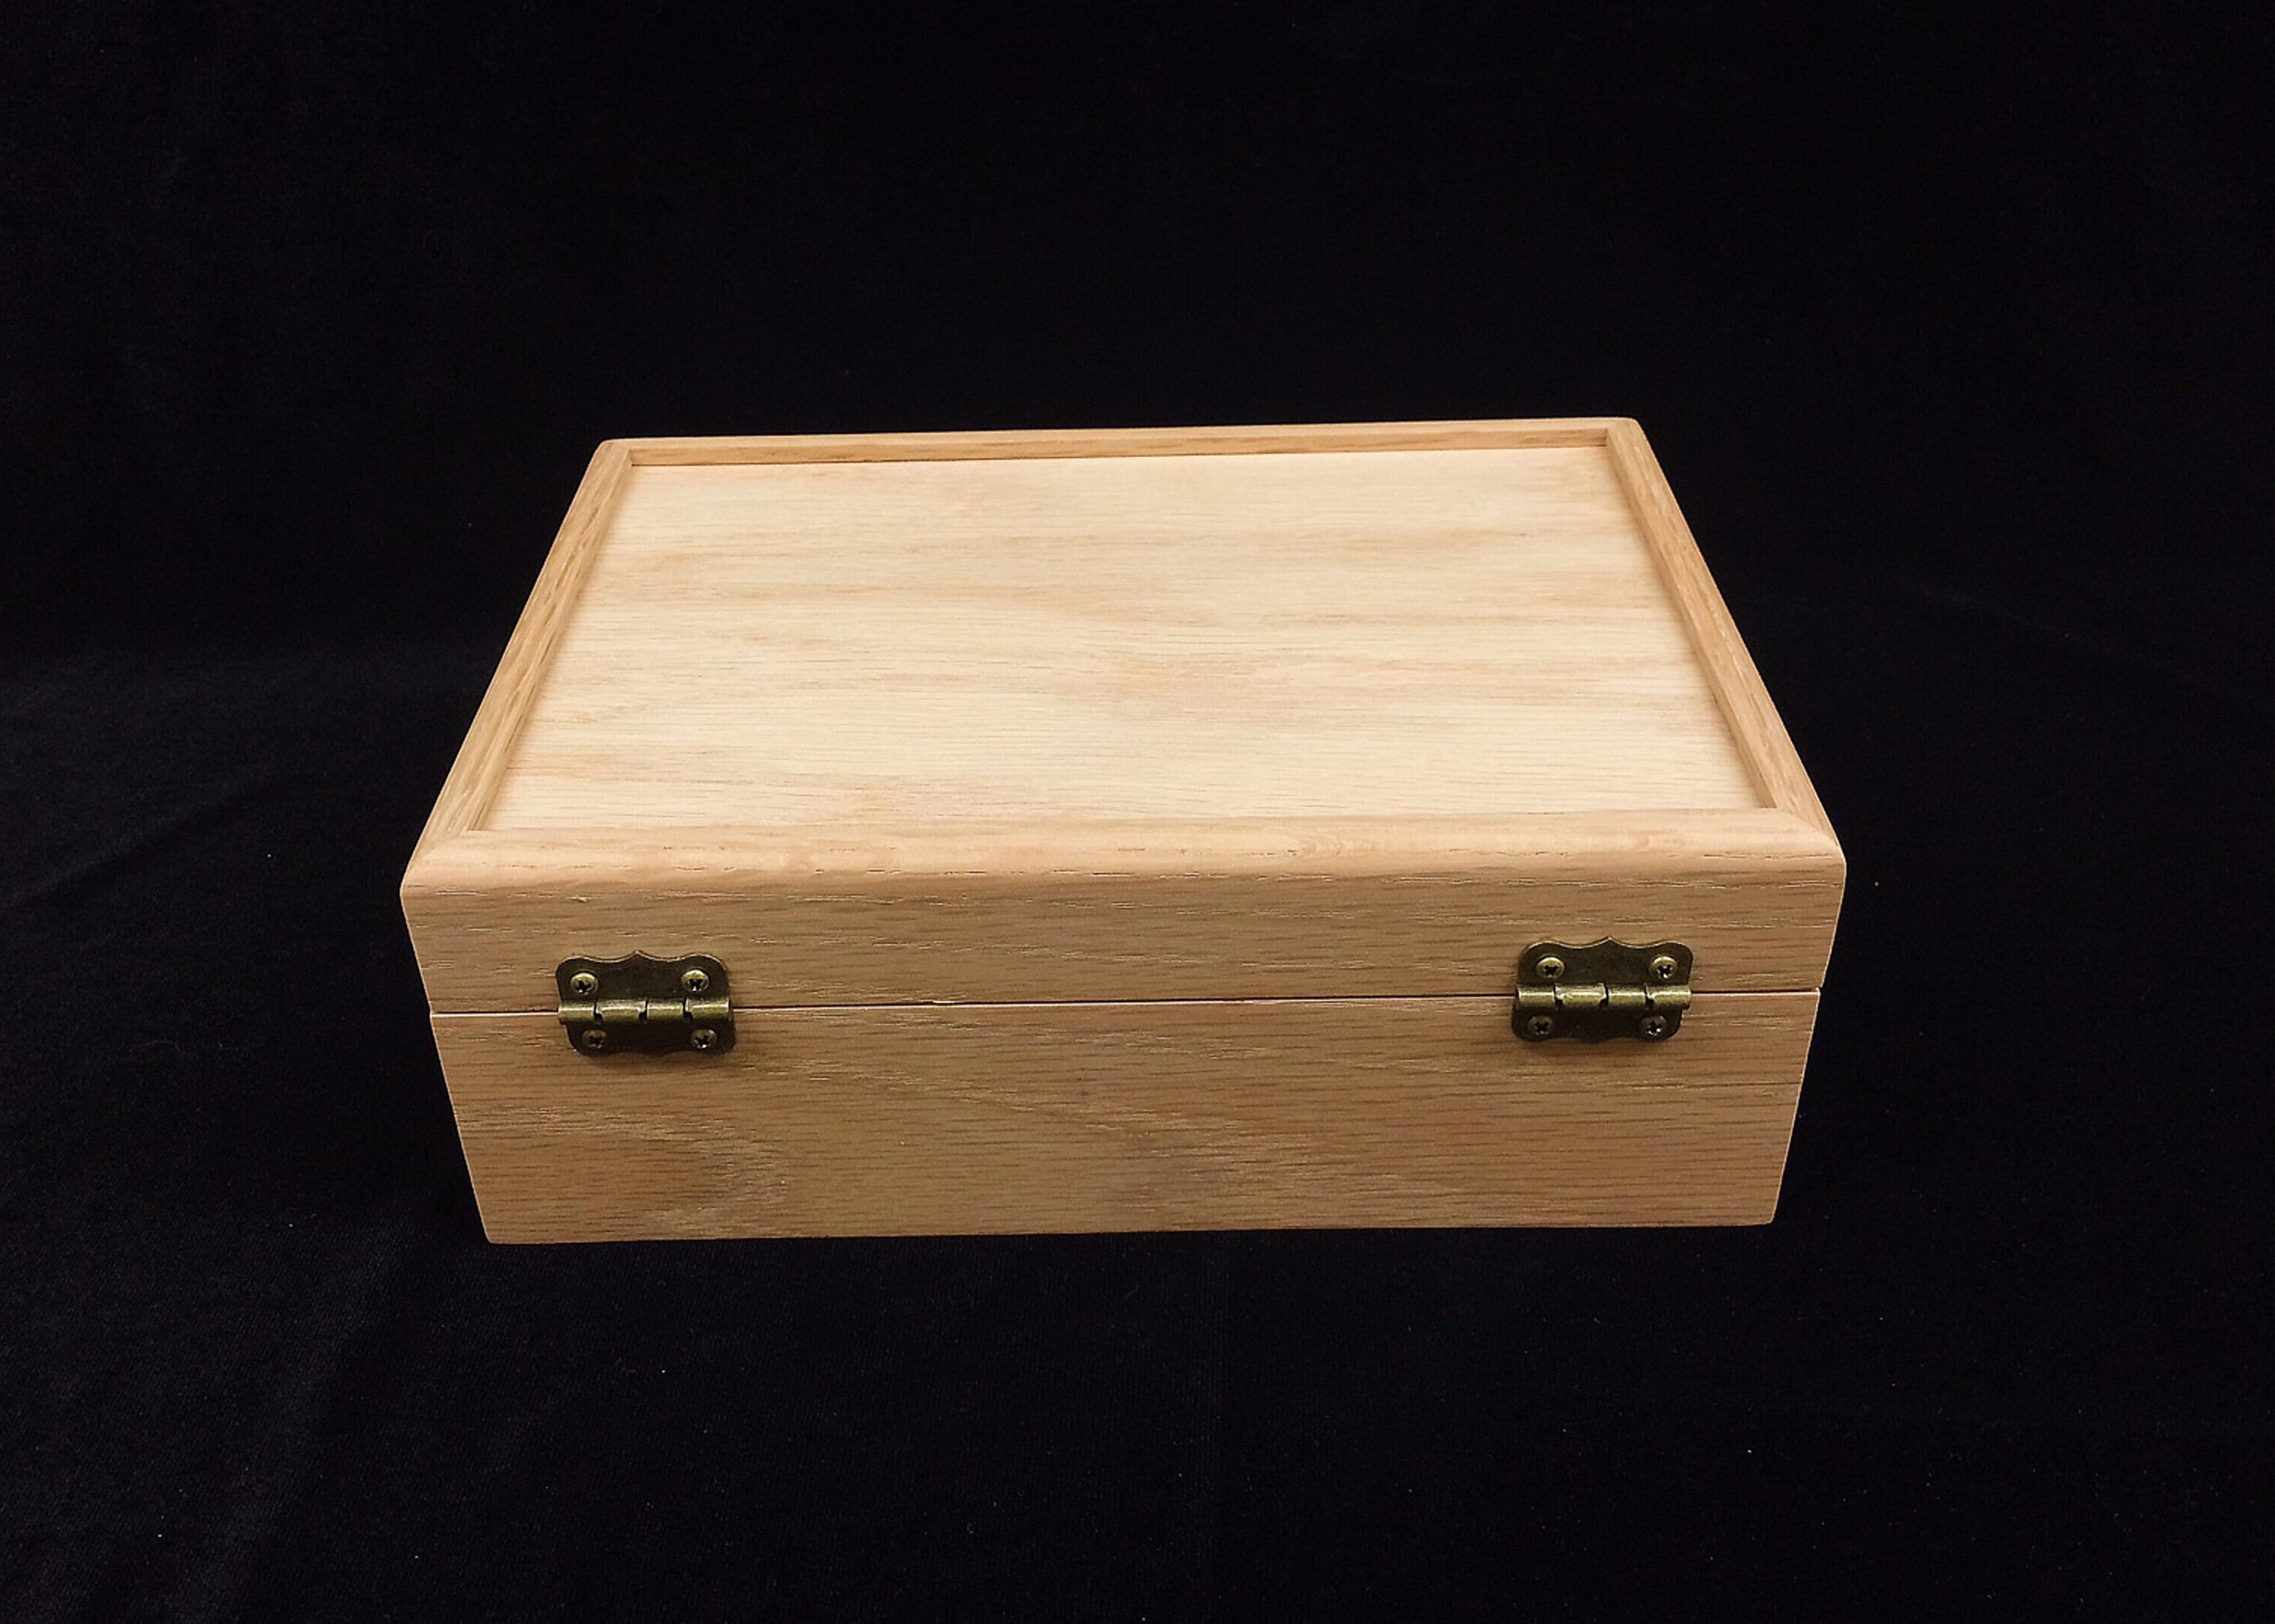 6 cajas grandes de madera sin terminar con tapa con bisagras y cierre  frontal, cajas de madera rectangulares sin pintar, cajas de madera para